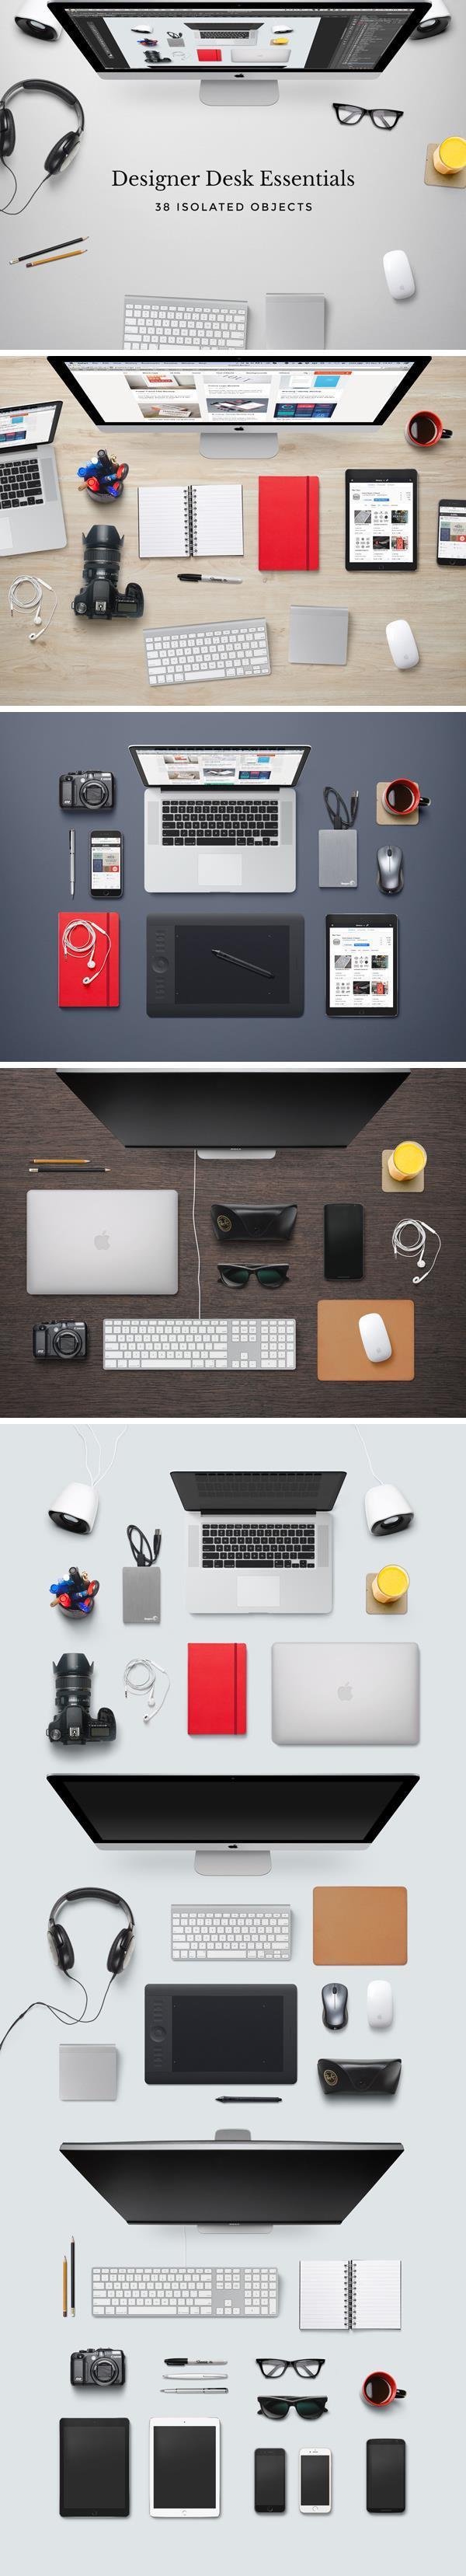 Designer Desk Workspace Mockup Free PSD